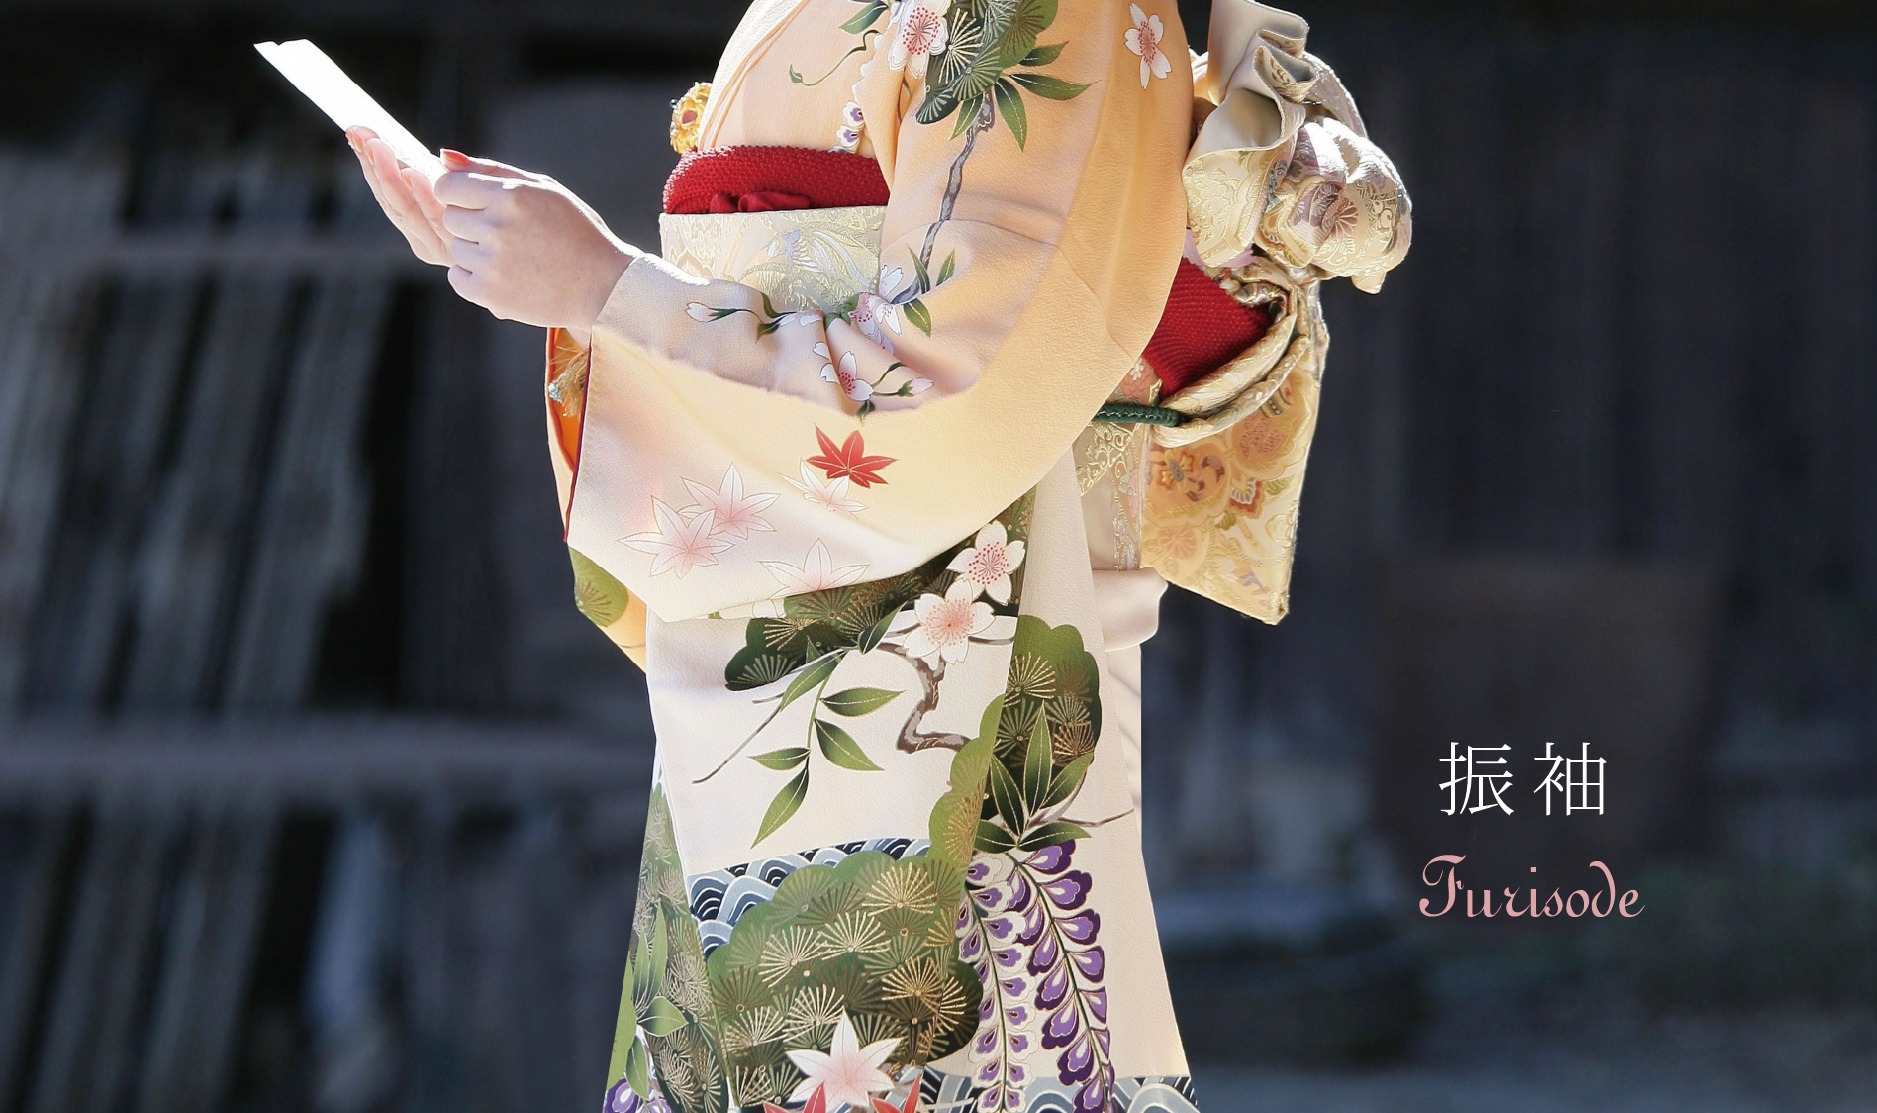 長崎の結婚式
親族衣裳レンタル
和装
神社挙式
挙式
人前式
留袖レンタル
振袖レンタル
成人式振袖レンタル